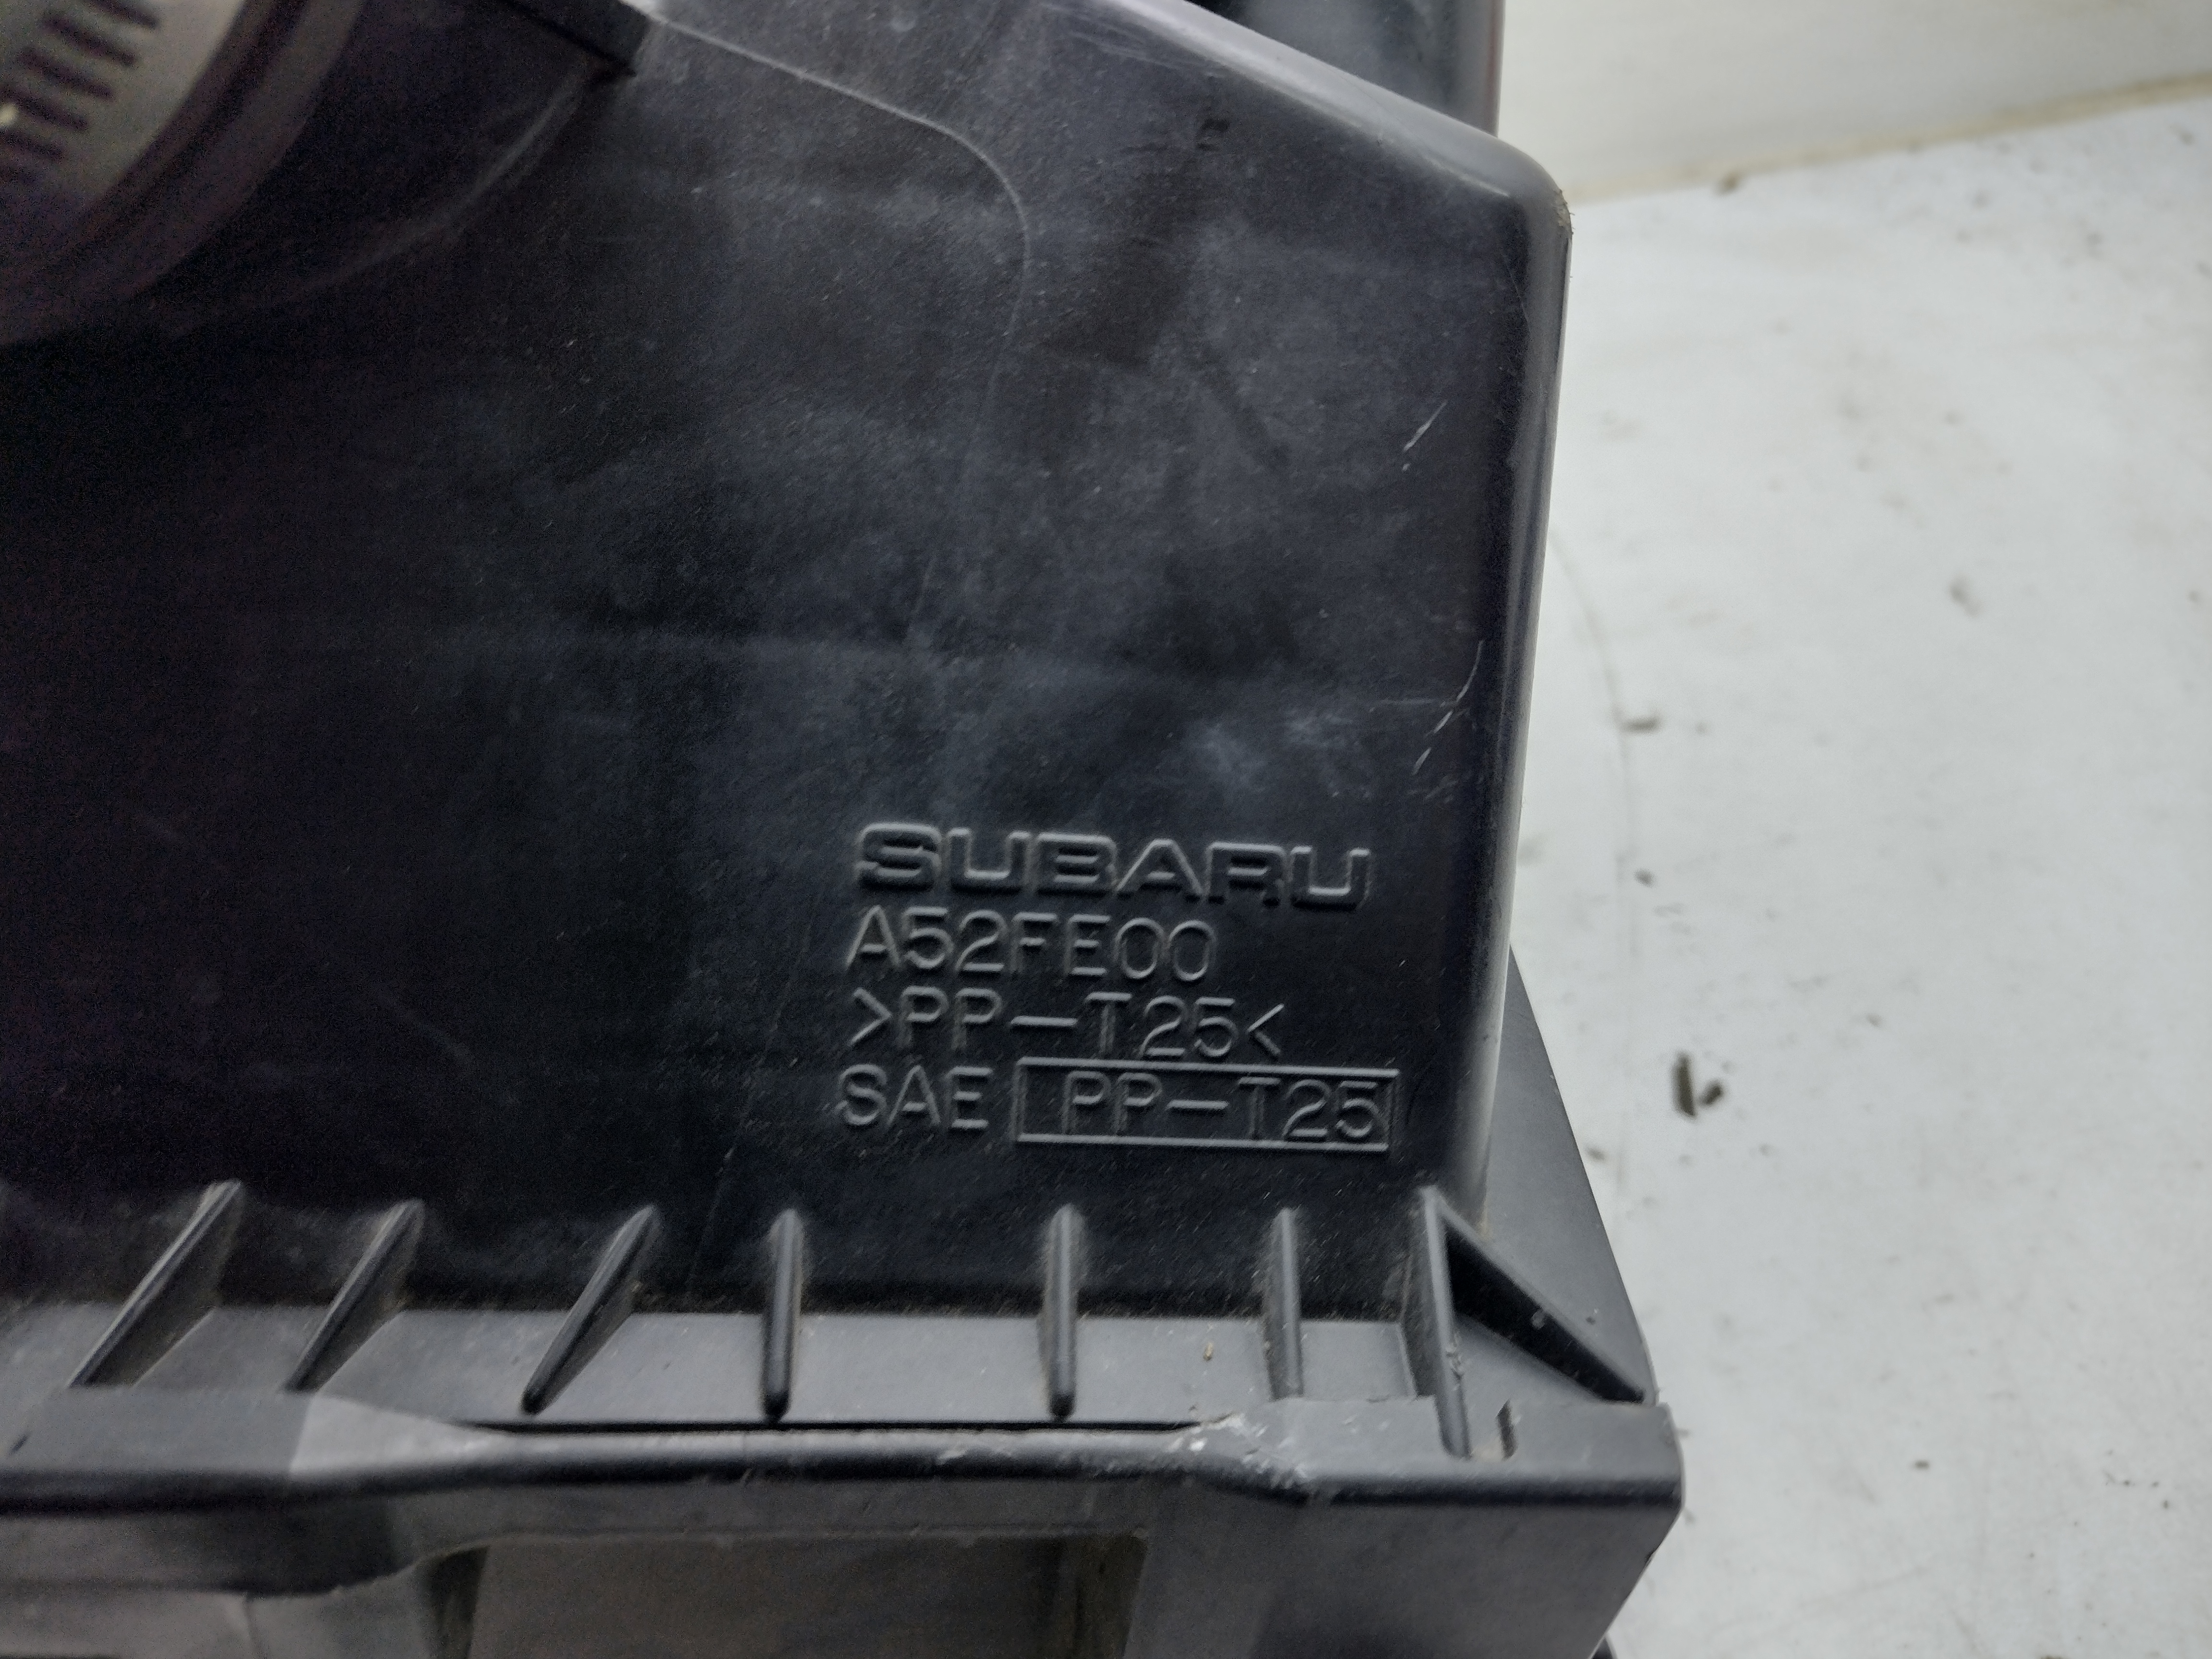 Luftfilterkasten A52FE00 mit Schlauch für Subaru Impreza WRX Turbo Newage GD GG 